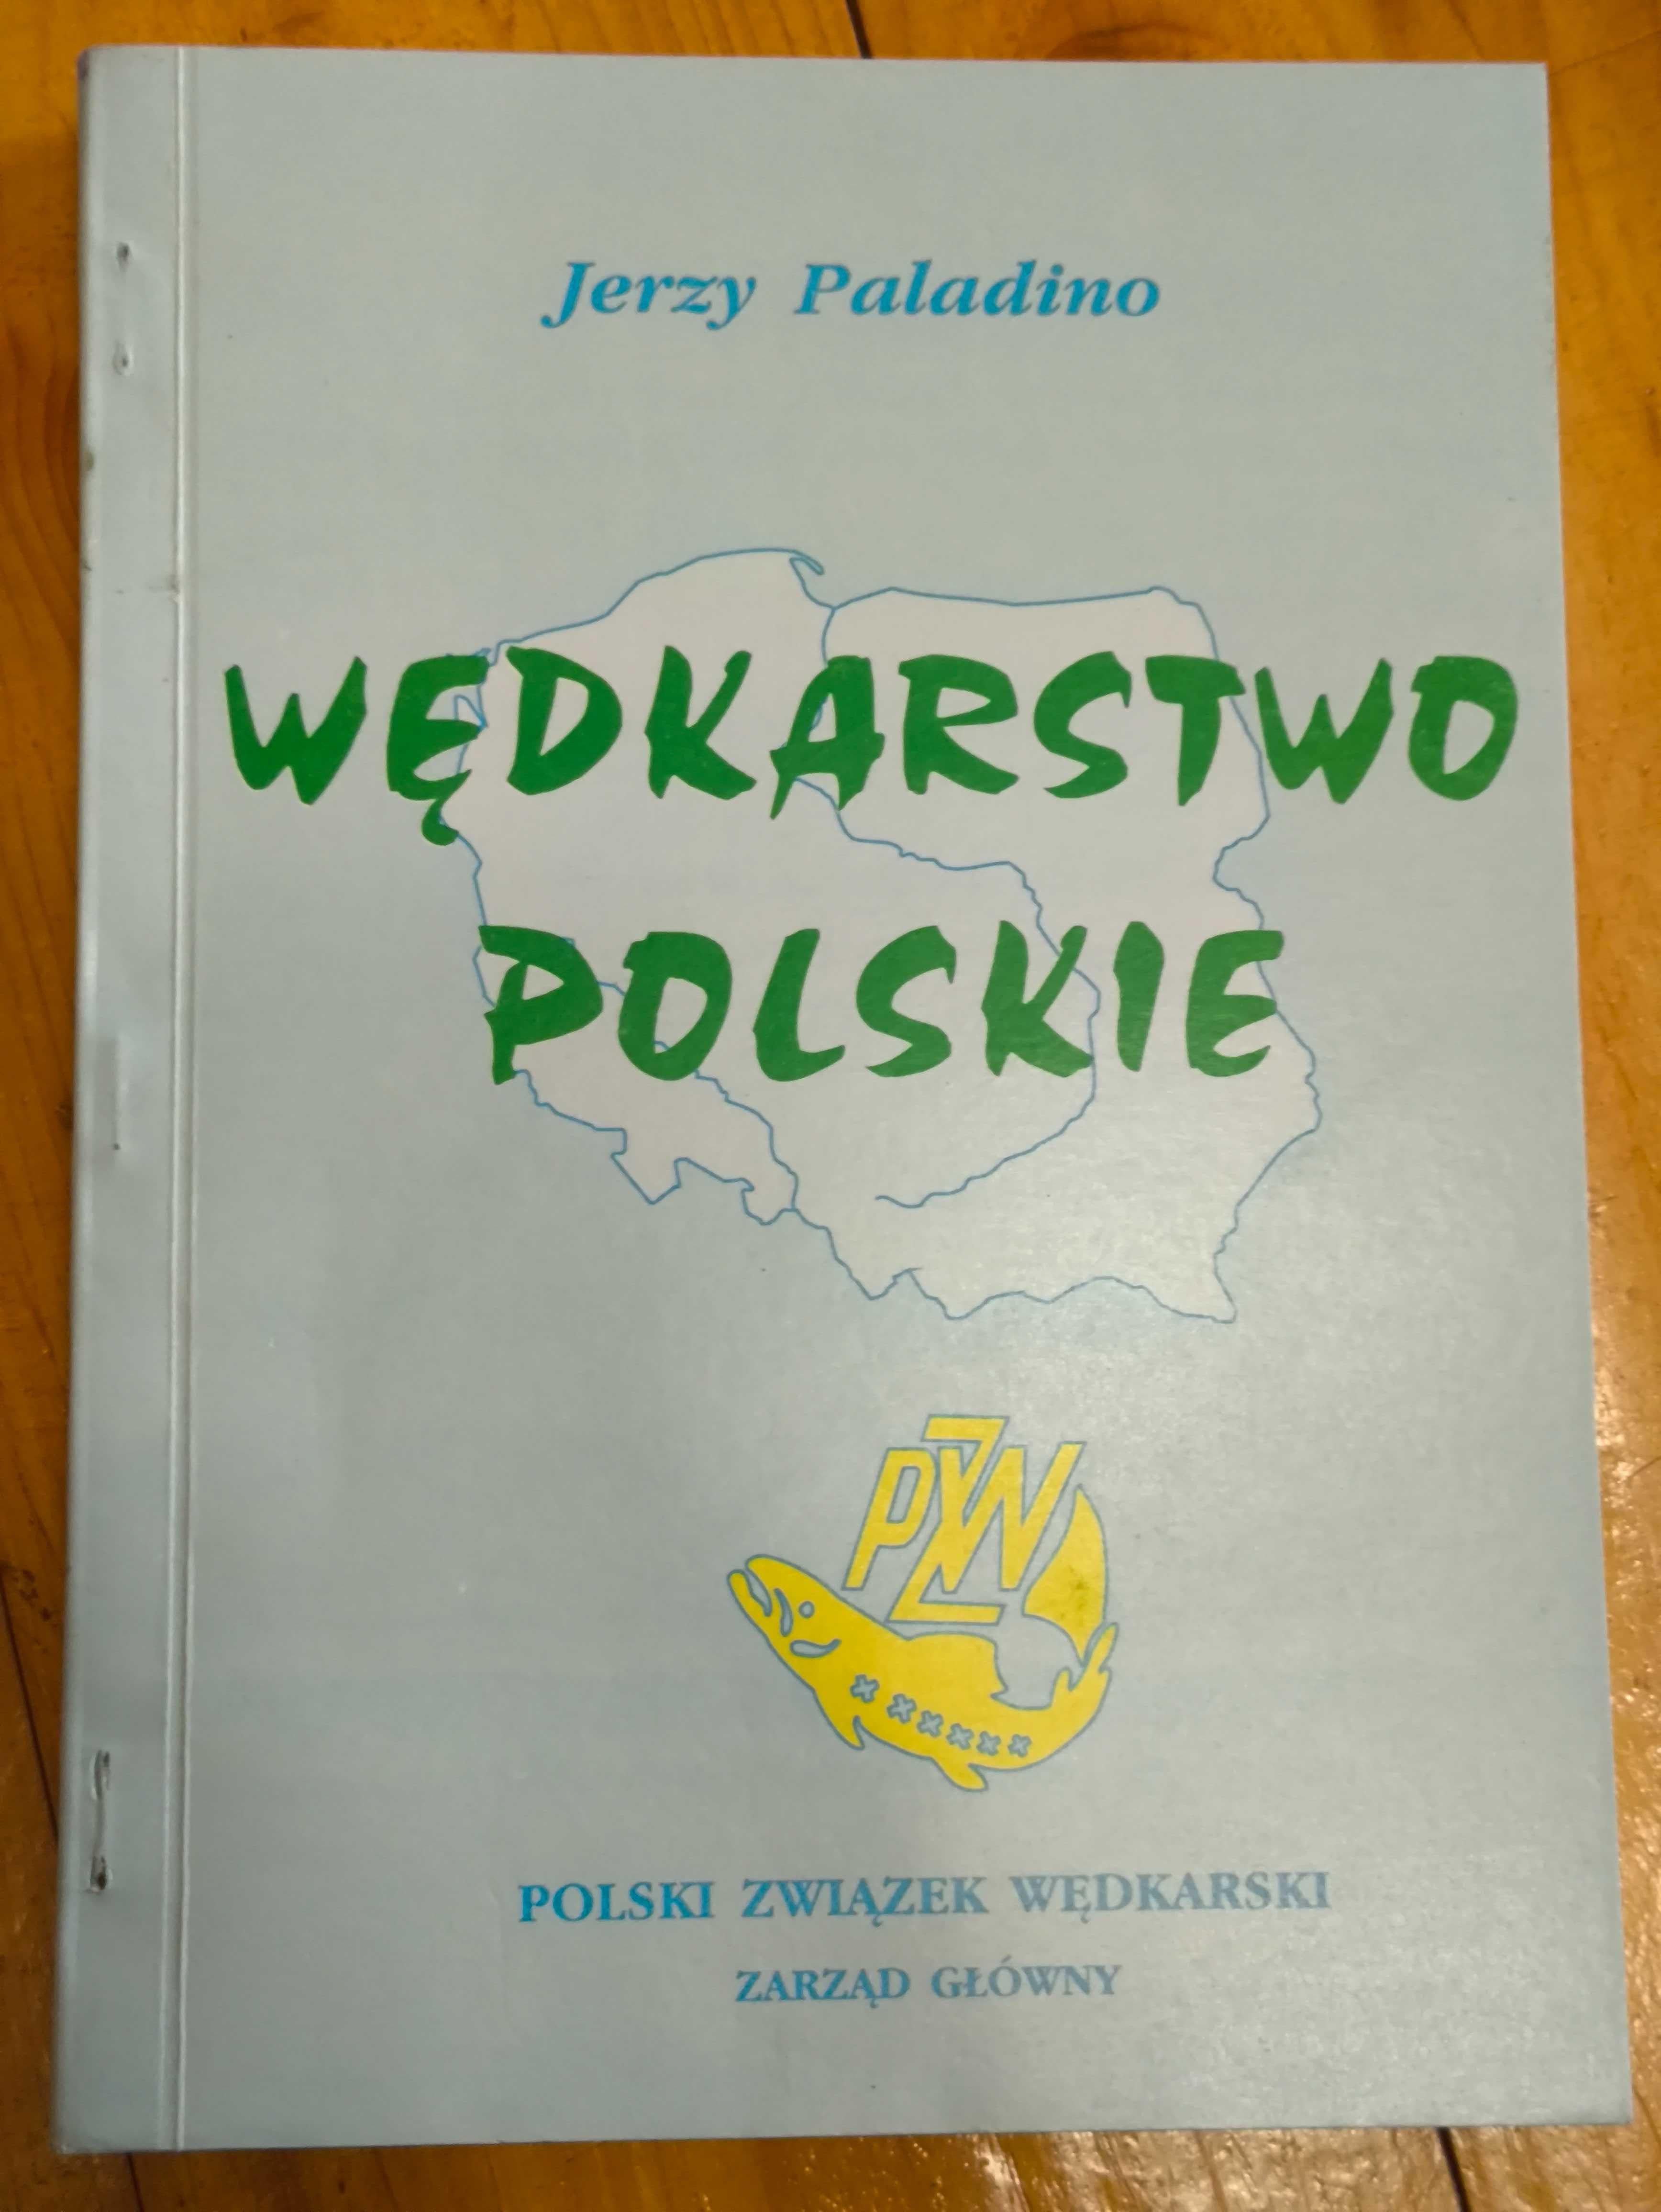 Książka o wędkarstwie polskim przydatna